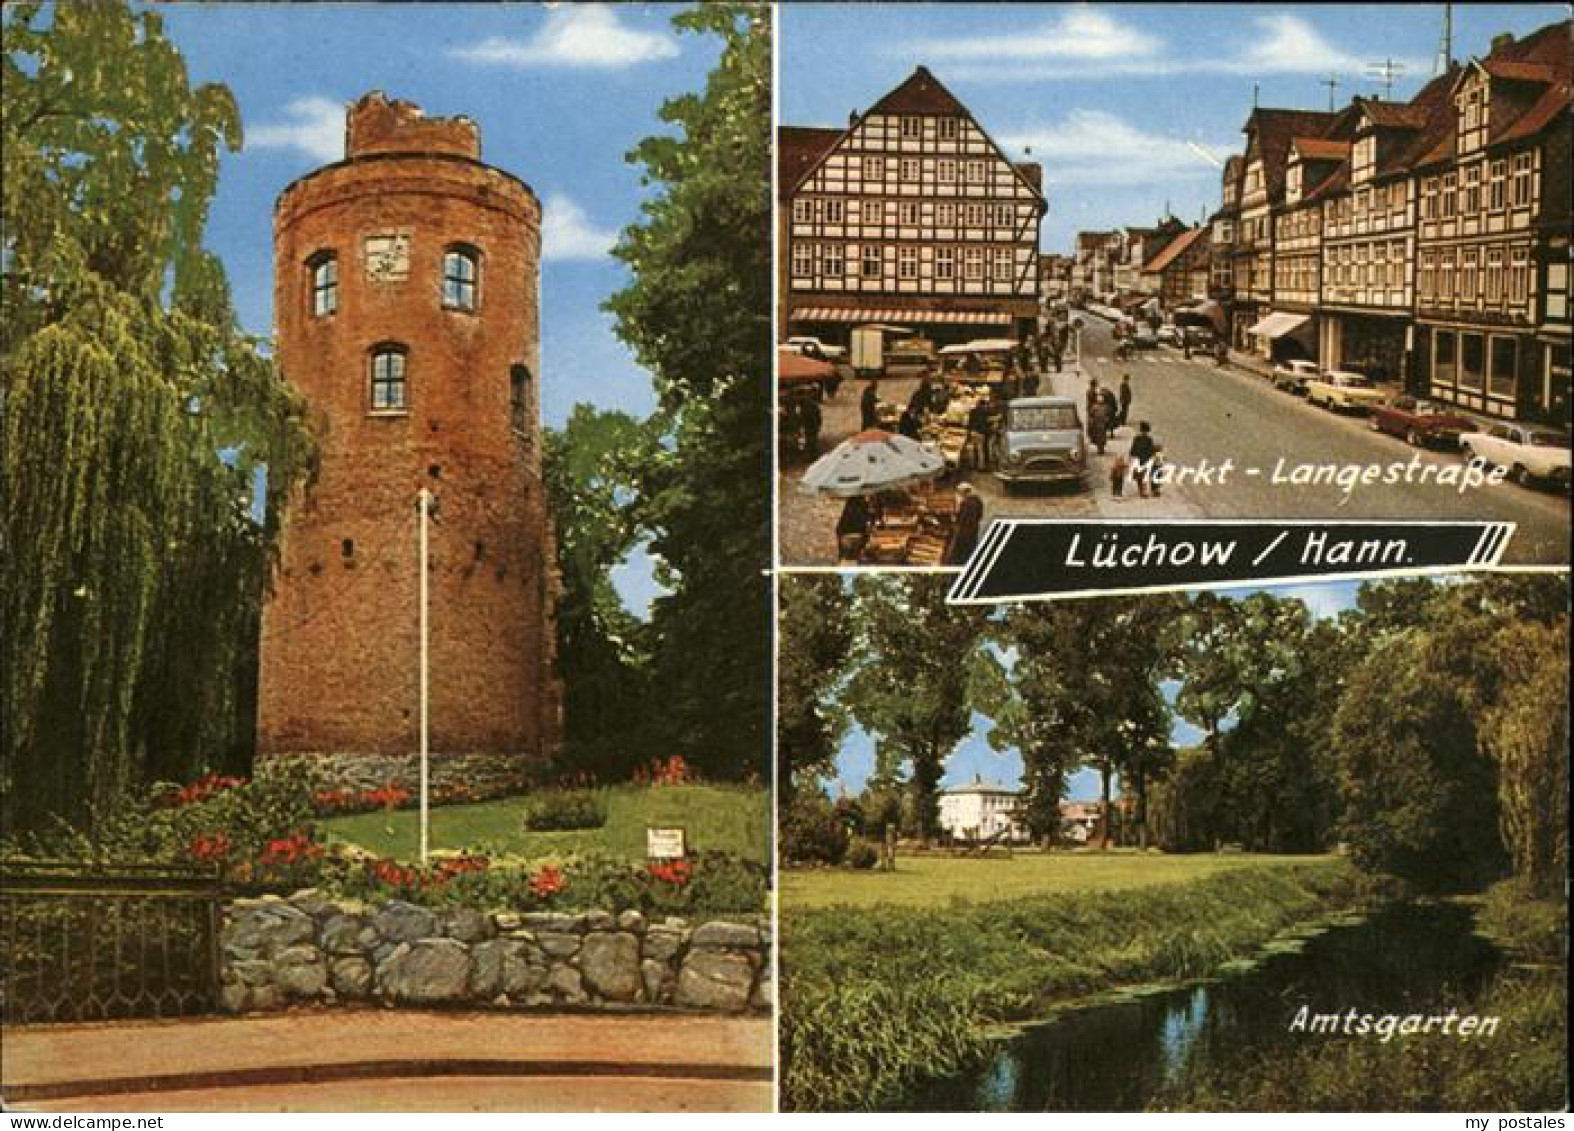 41225819 Luechow Wendeland Markt Langestrasse, Amtsgarten, Schlossturm Luechow ( - Lüchow